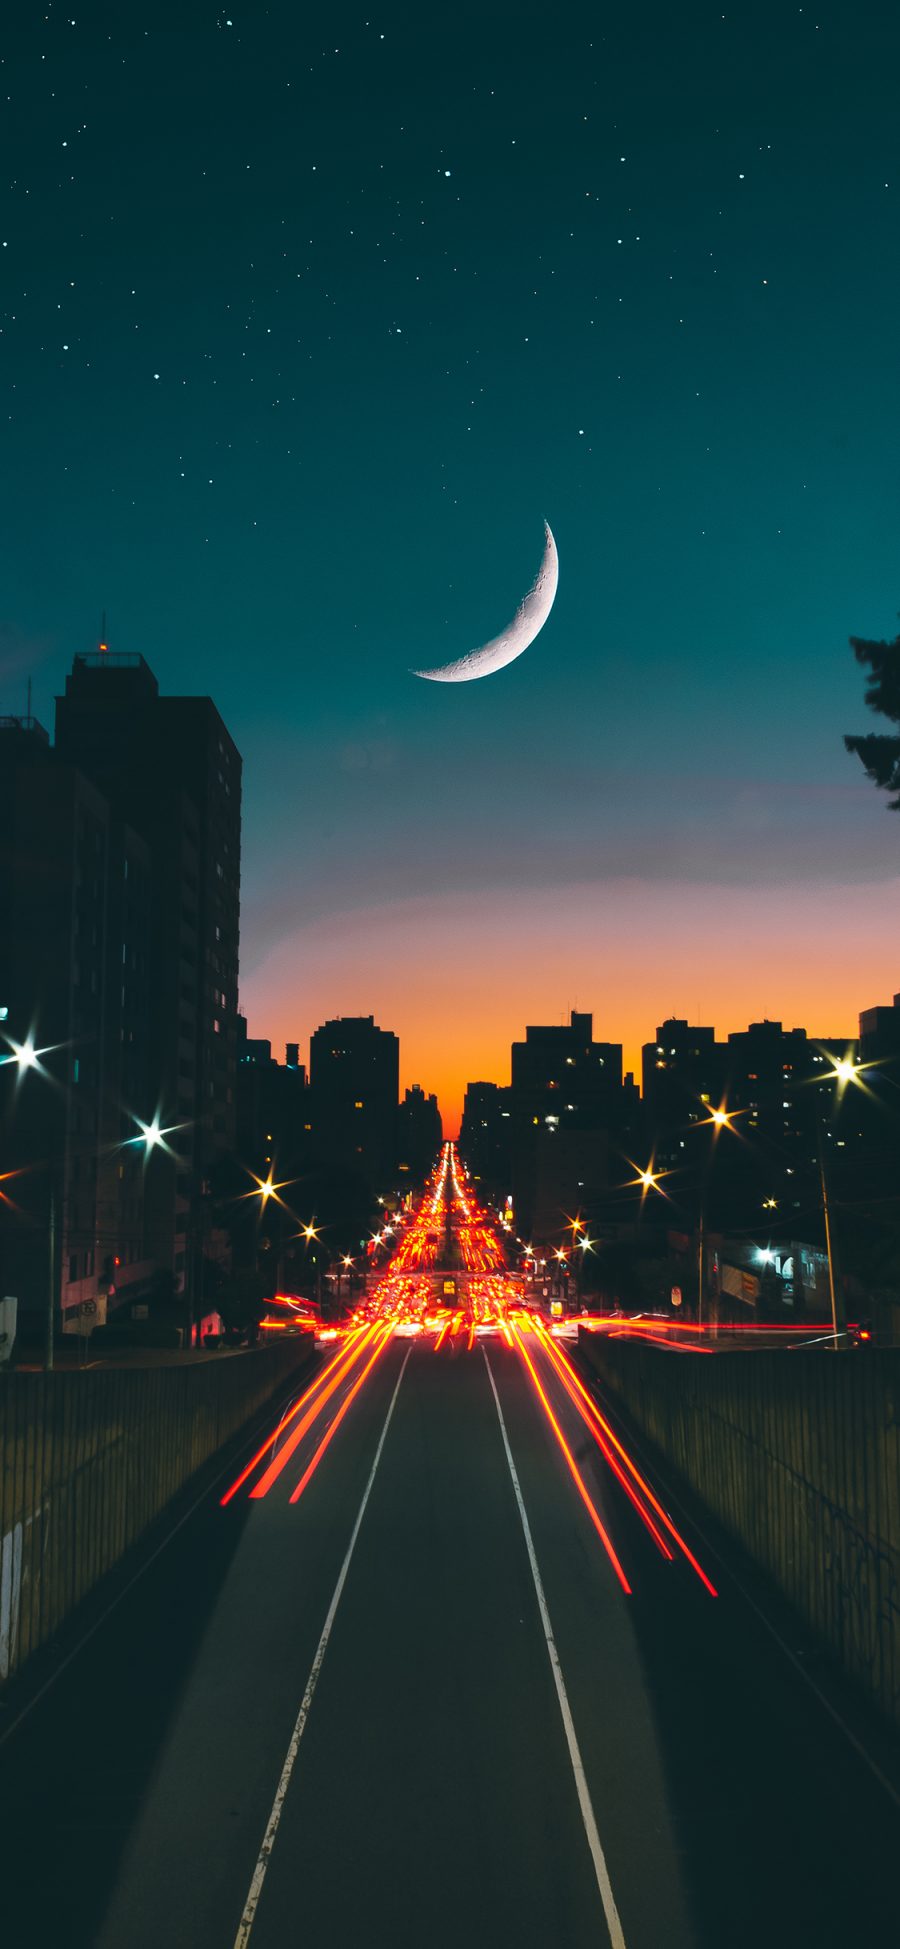 [2436×1125]夜晚 夜空 星空 月亮 城市 道路 苹果手机壁纸图片